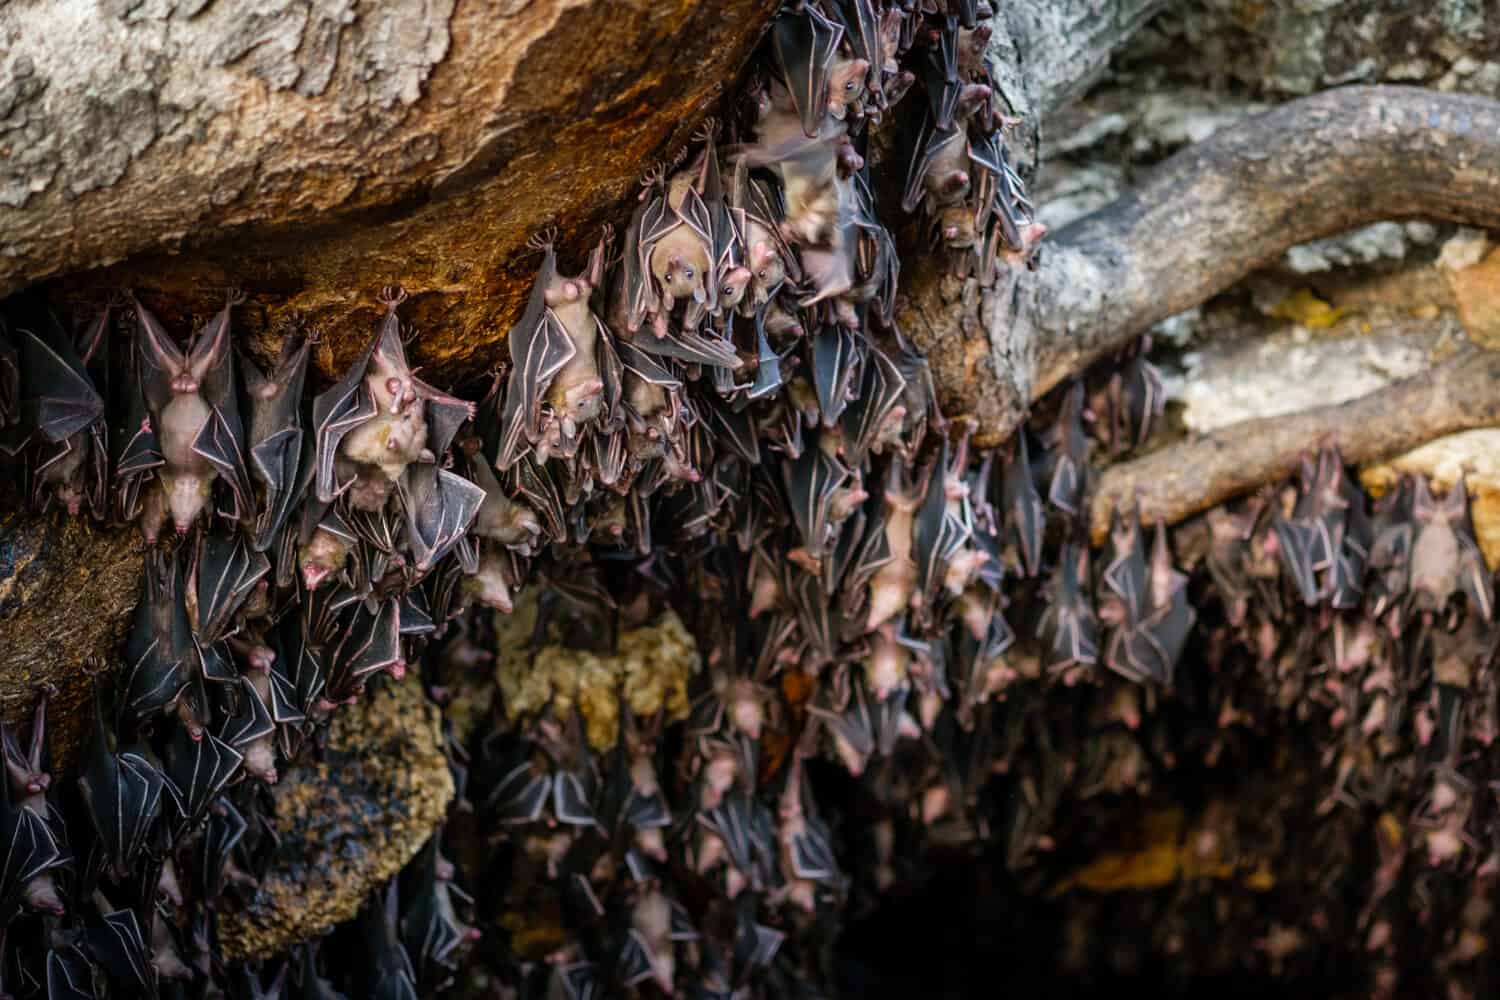 Pipistrelli della frutta nella grotta dei pipistrelli di Monfort - Davao, Filippine